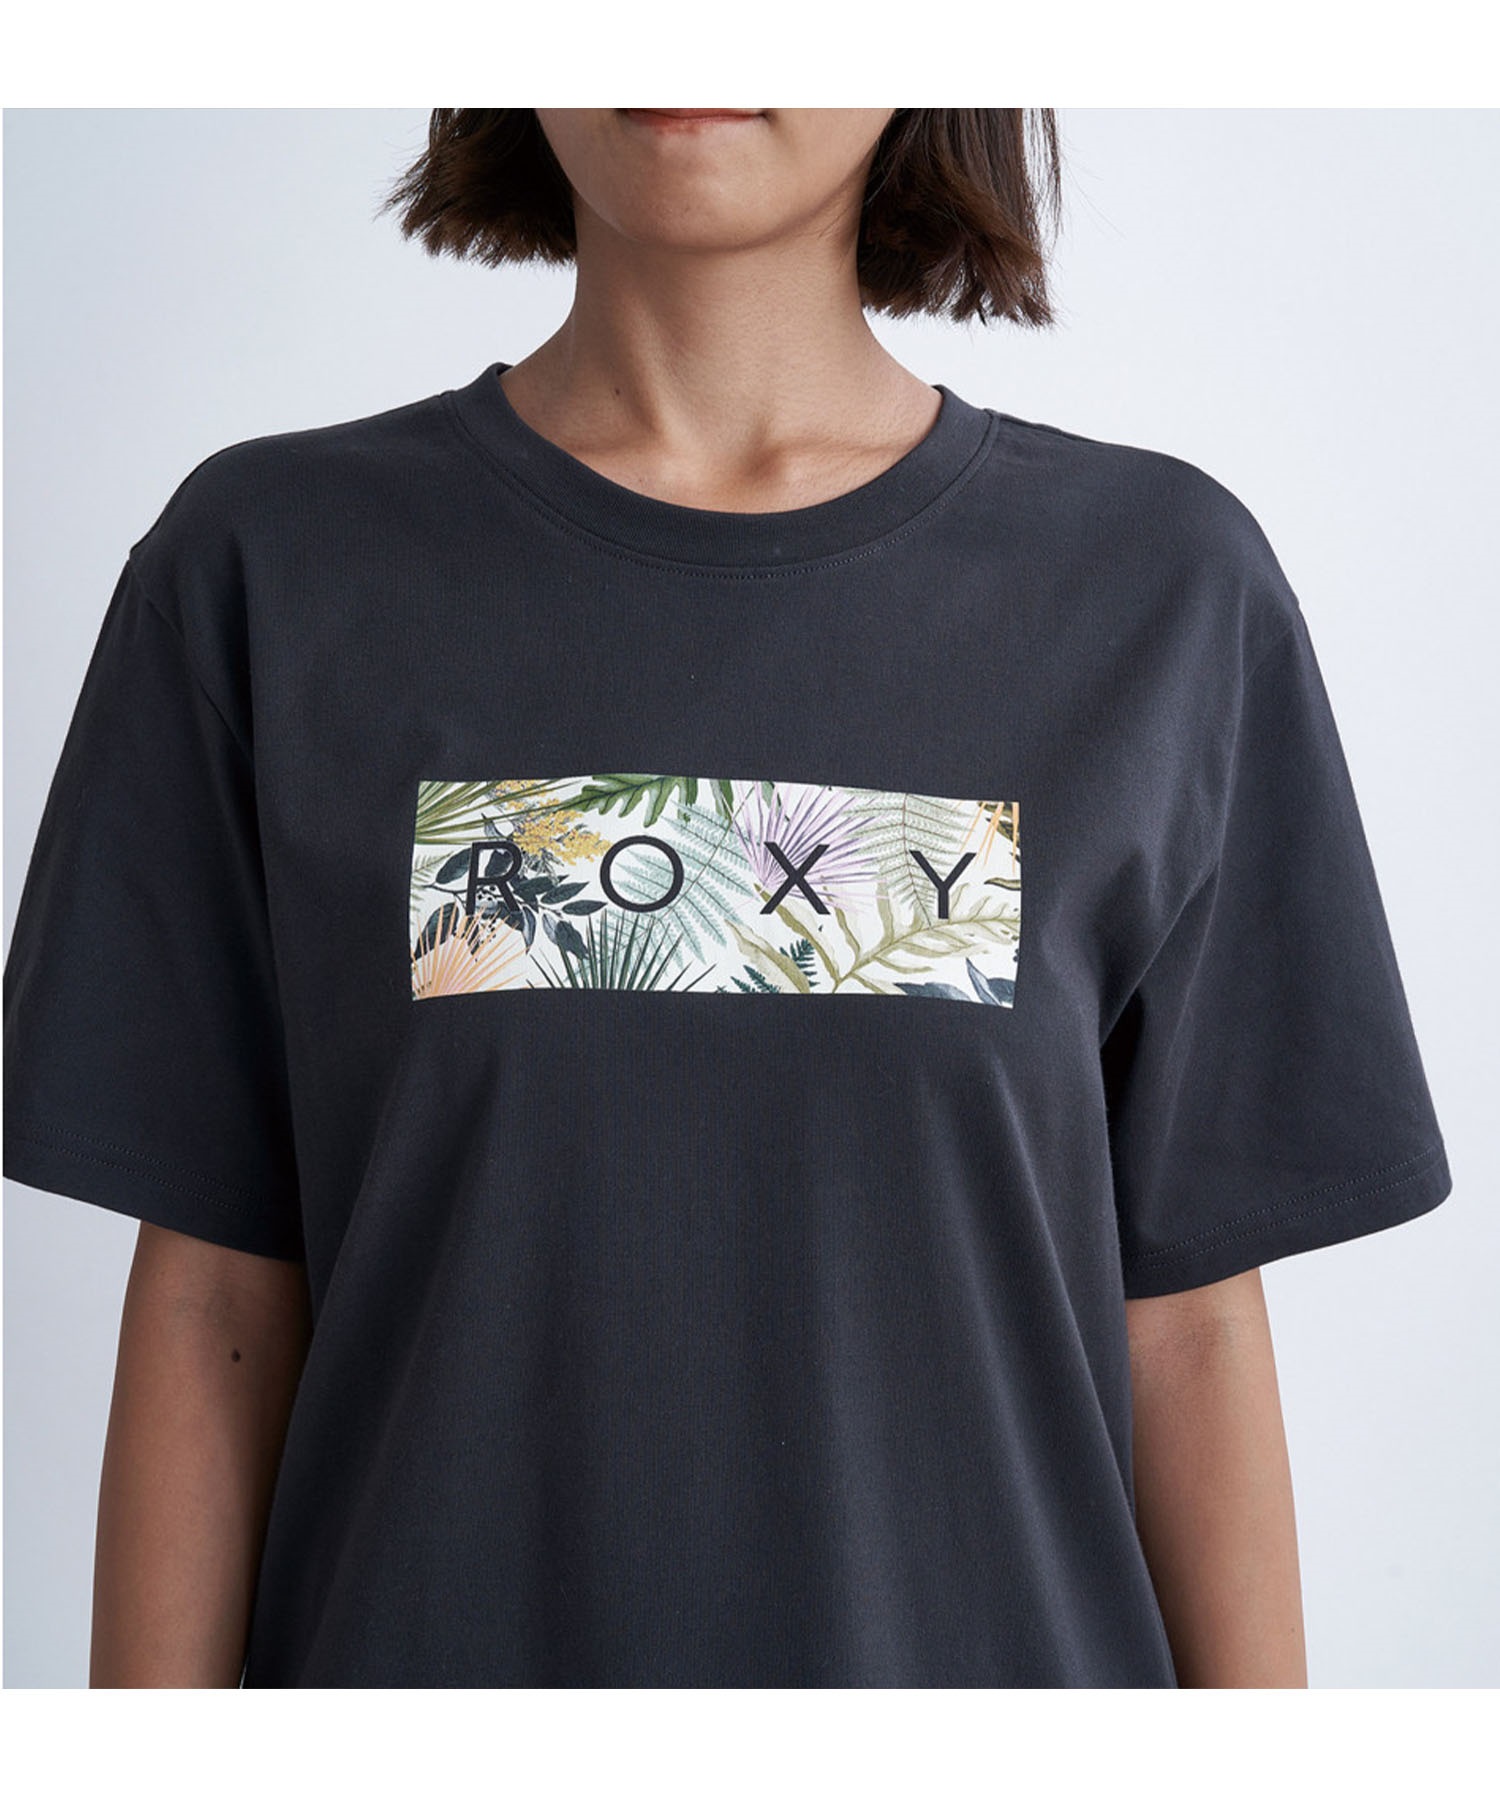 ROXY ロキシー シンプリーボタニカルティーシャツ レディース 半袖 Tシャツ クルーネック RST241075(LAV-S)